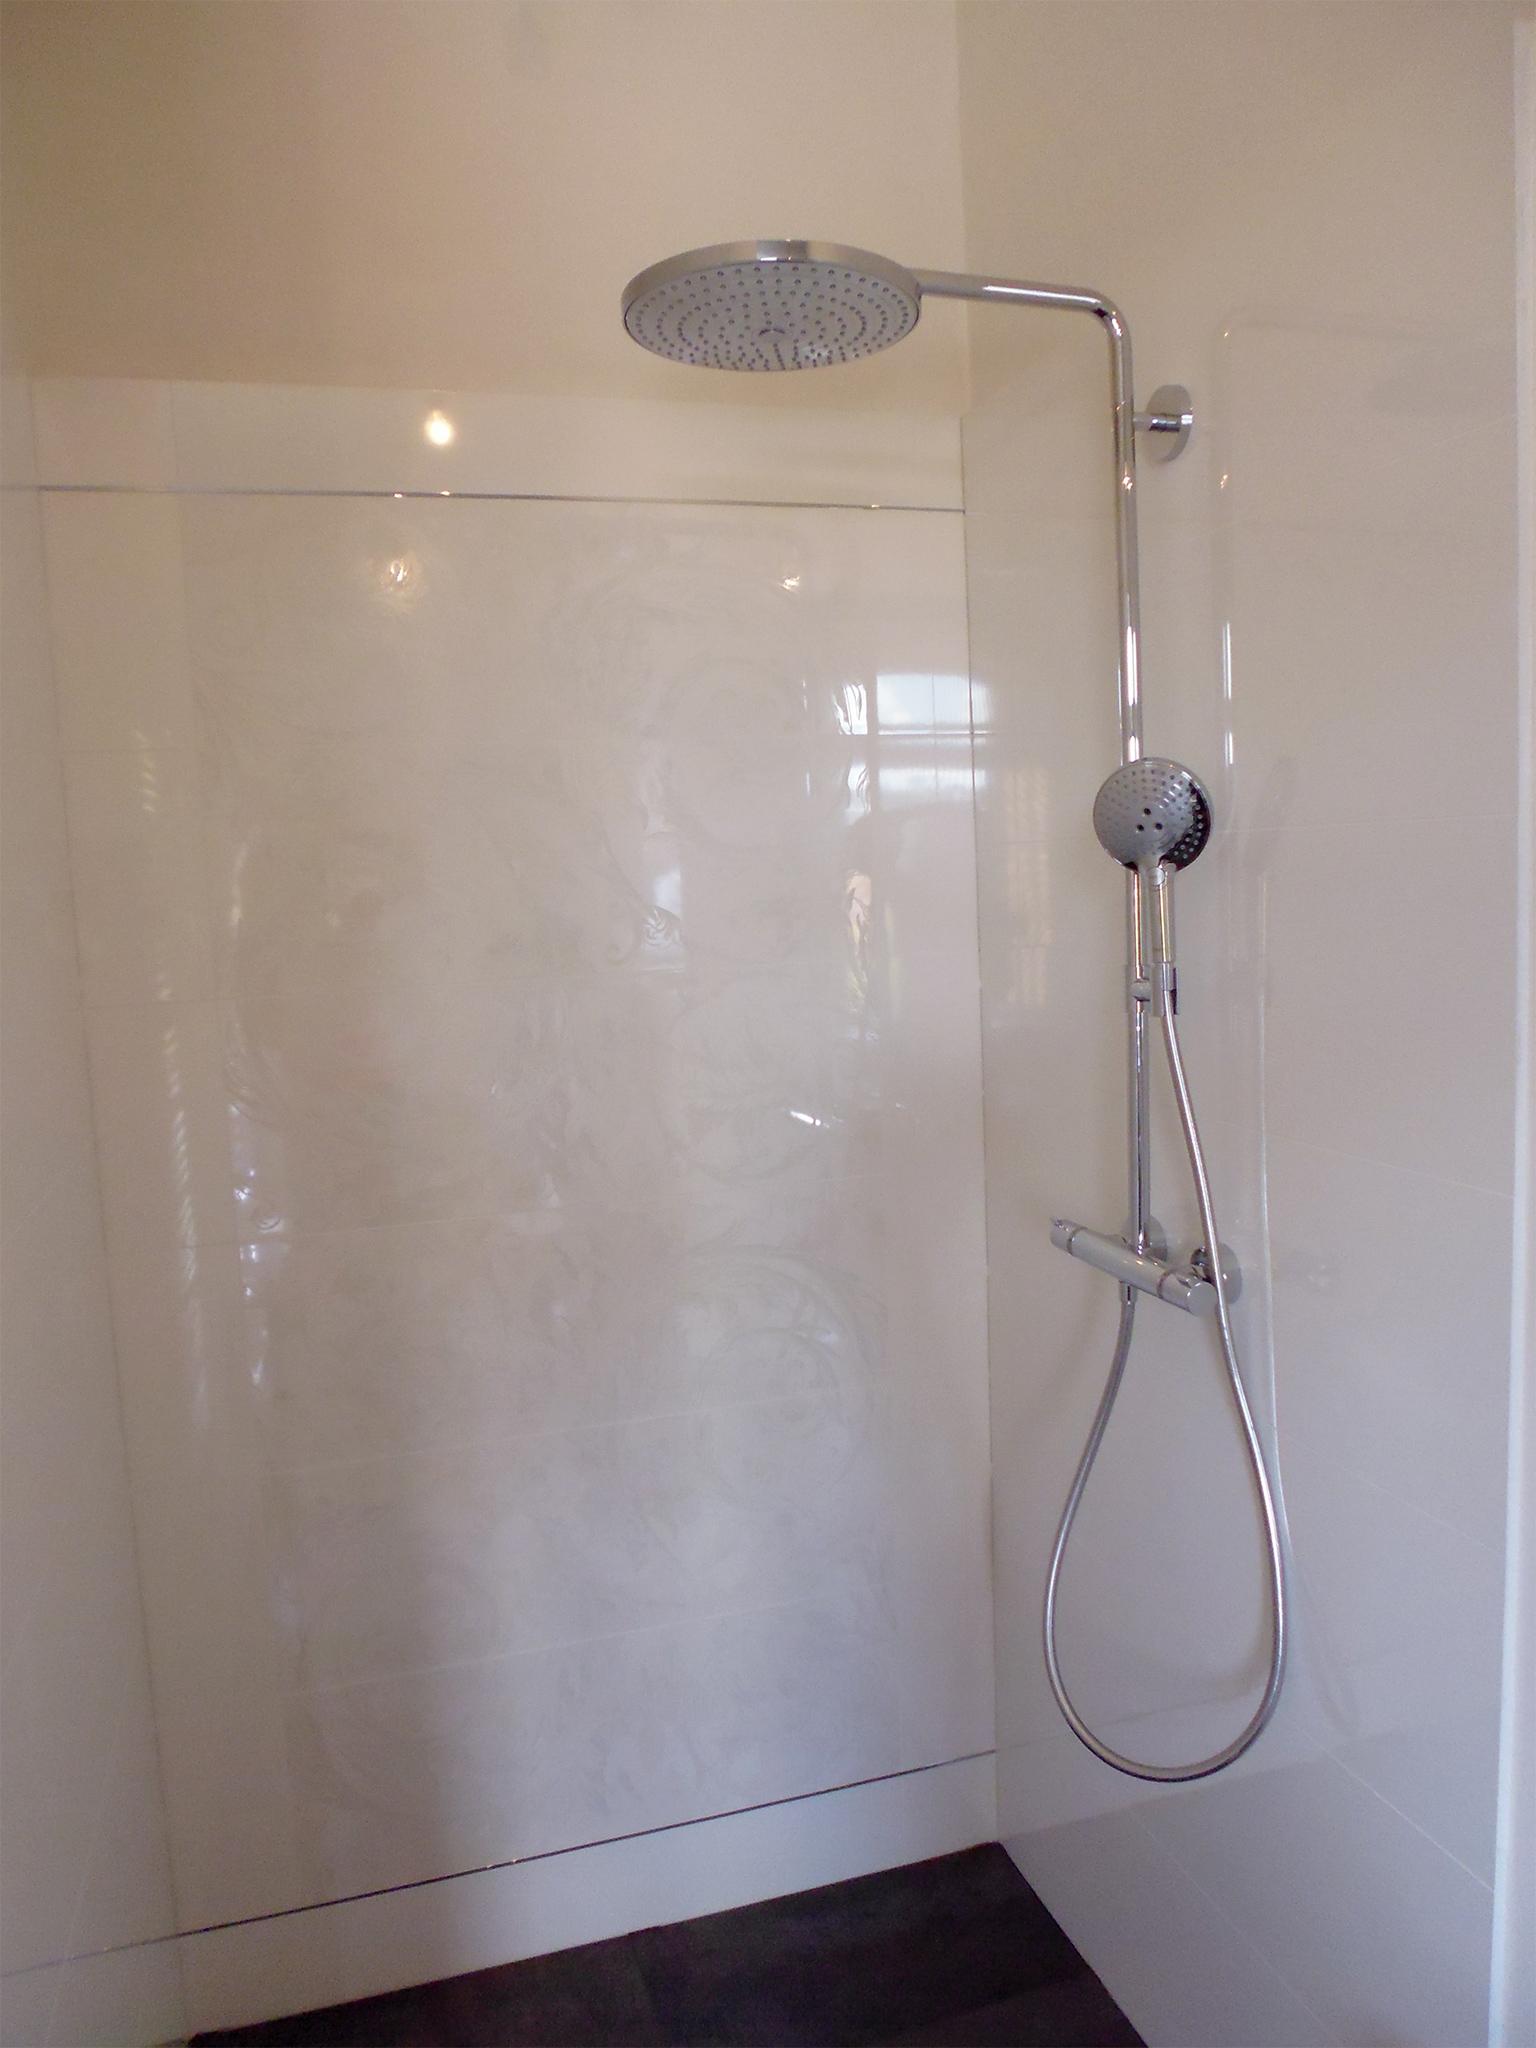 Die bodengleiche Dusche bietet viel Komfort #ebenerdigedusche ©HEIMWOHL GmbH